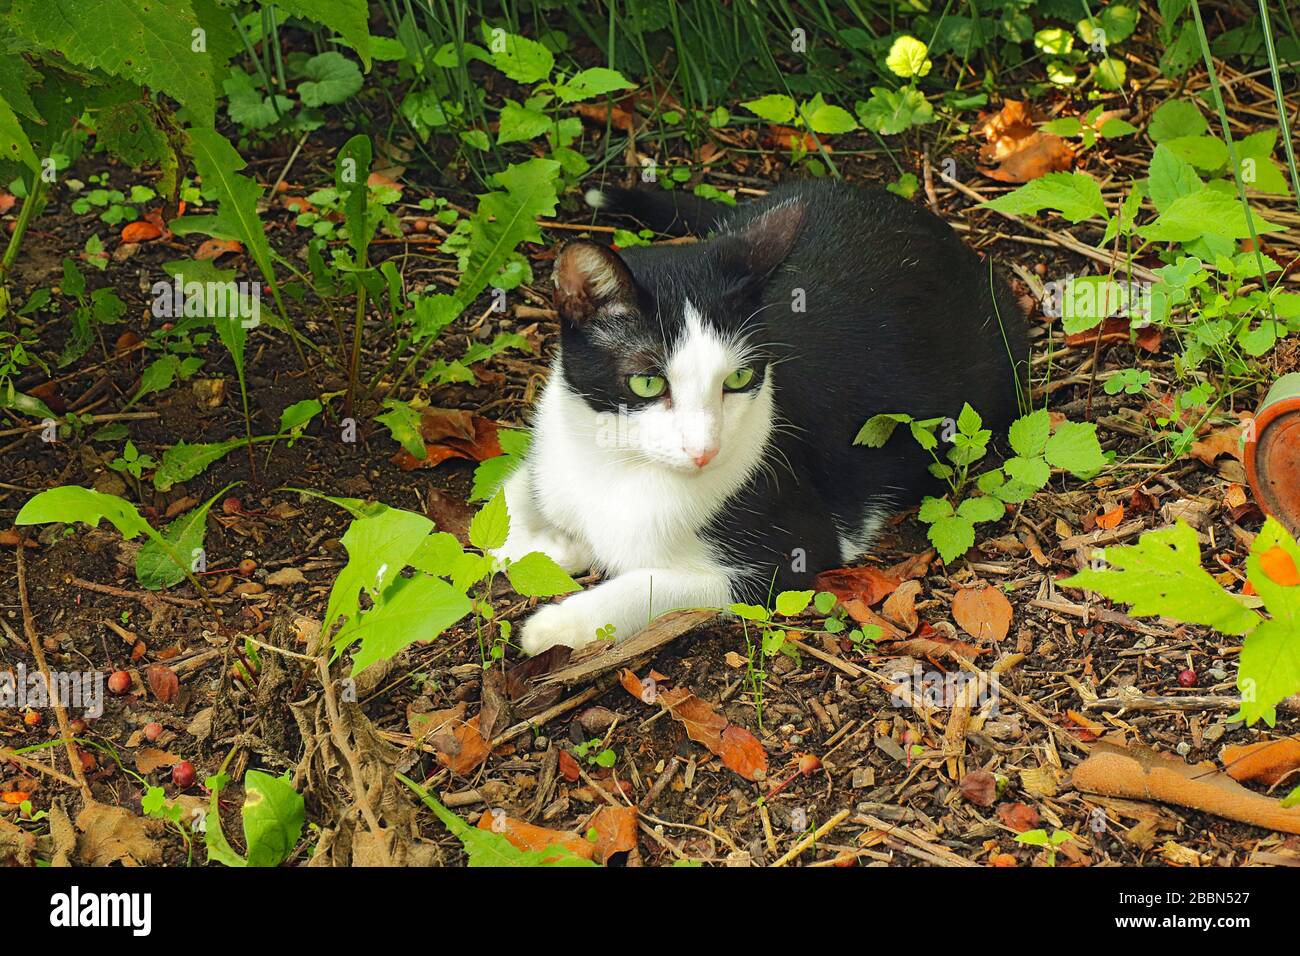 Un chat domestique de tuxedo (Felis catus) à la vue verte, noir et blanc entouré de végétation Banque D'Images